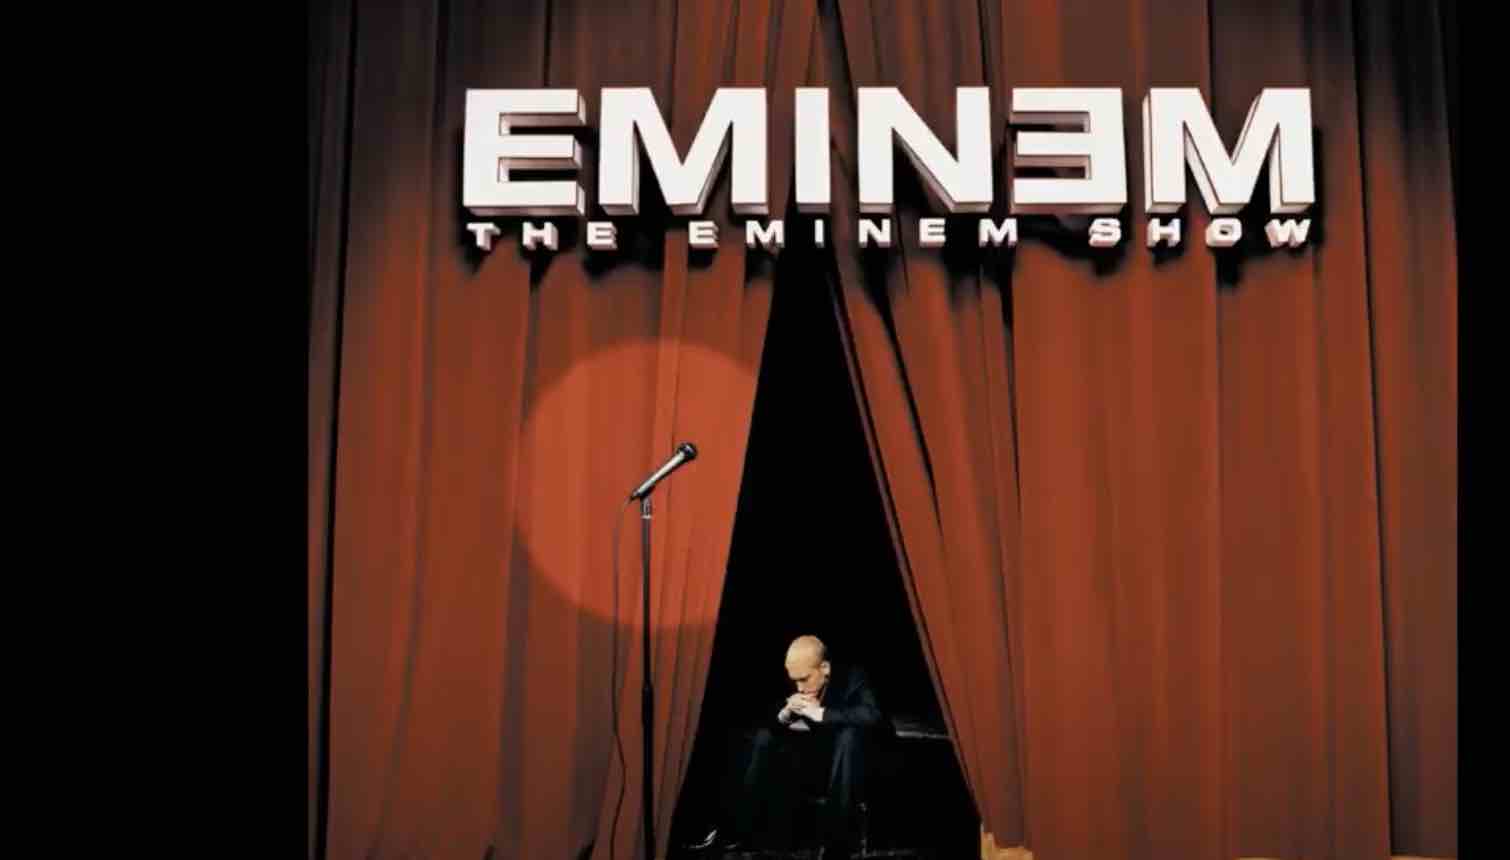 Eminem synger om at han har solgt sjelen sin til Djevelen